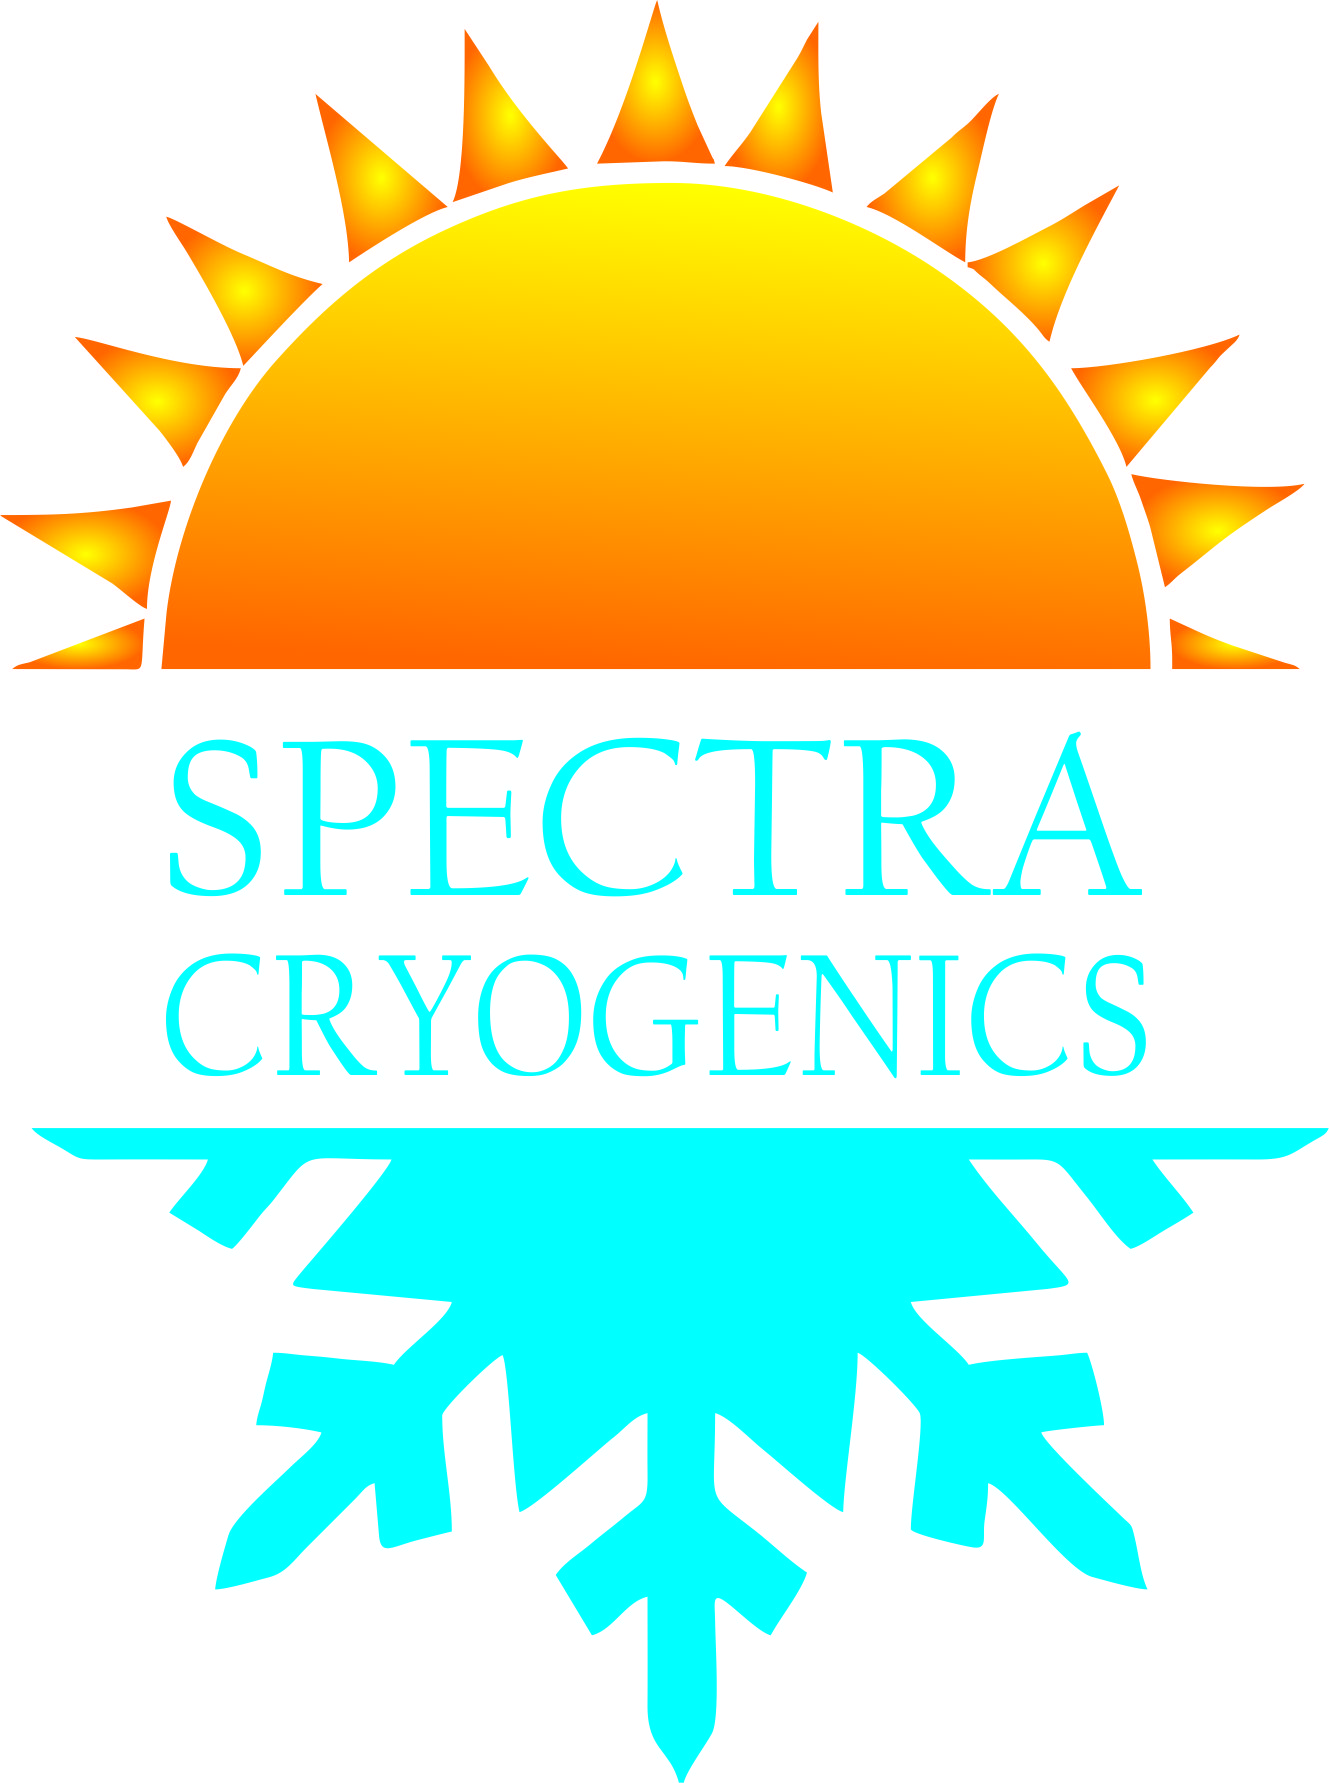 SPECTRA CRYOGENICS